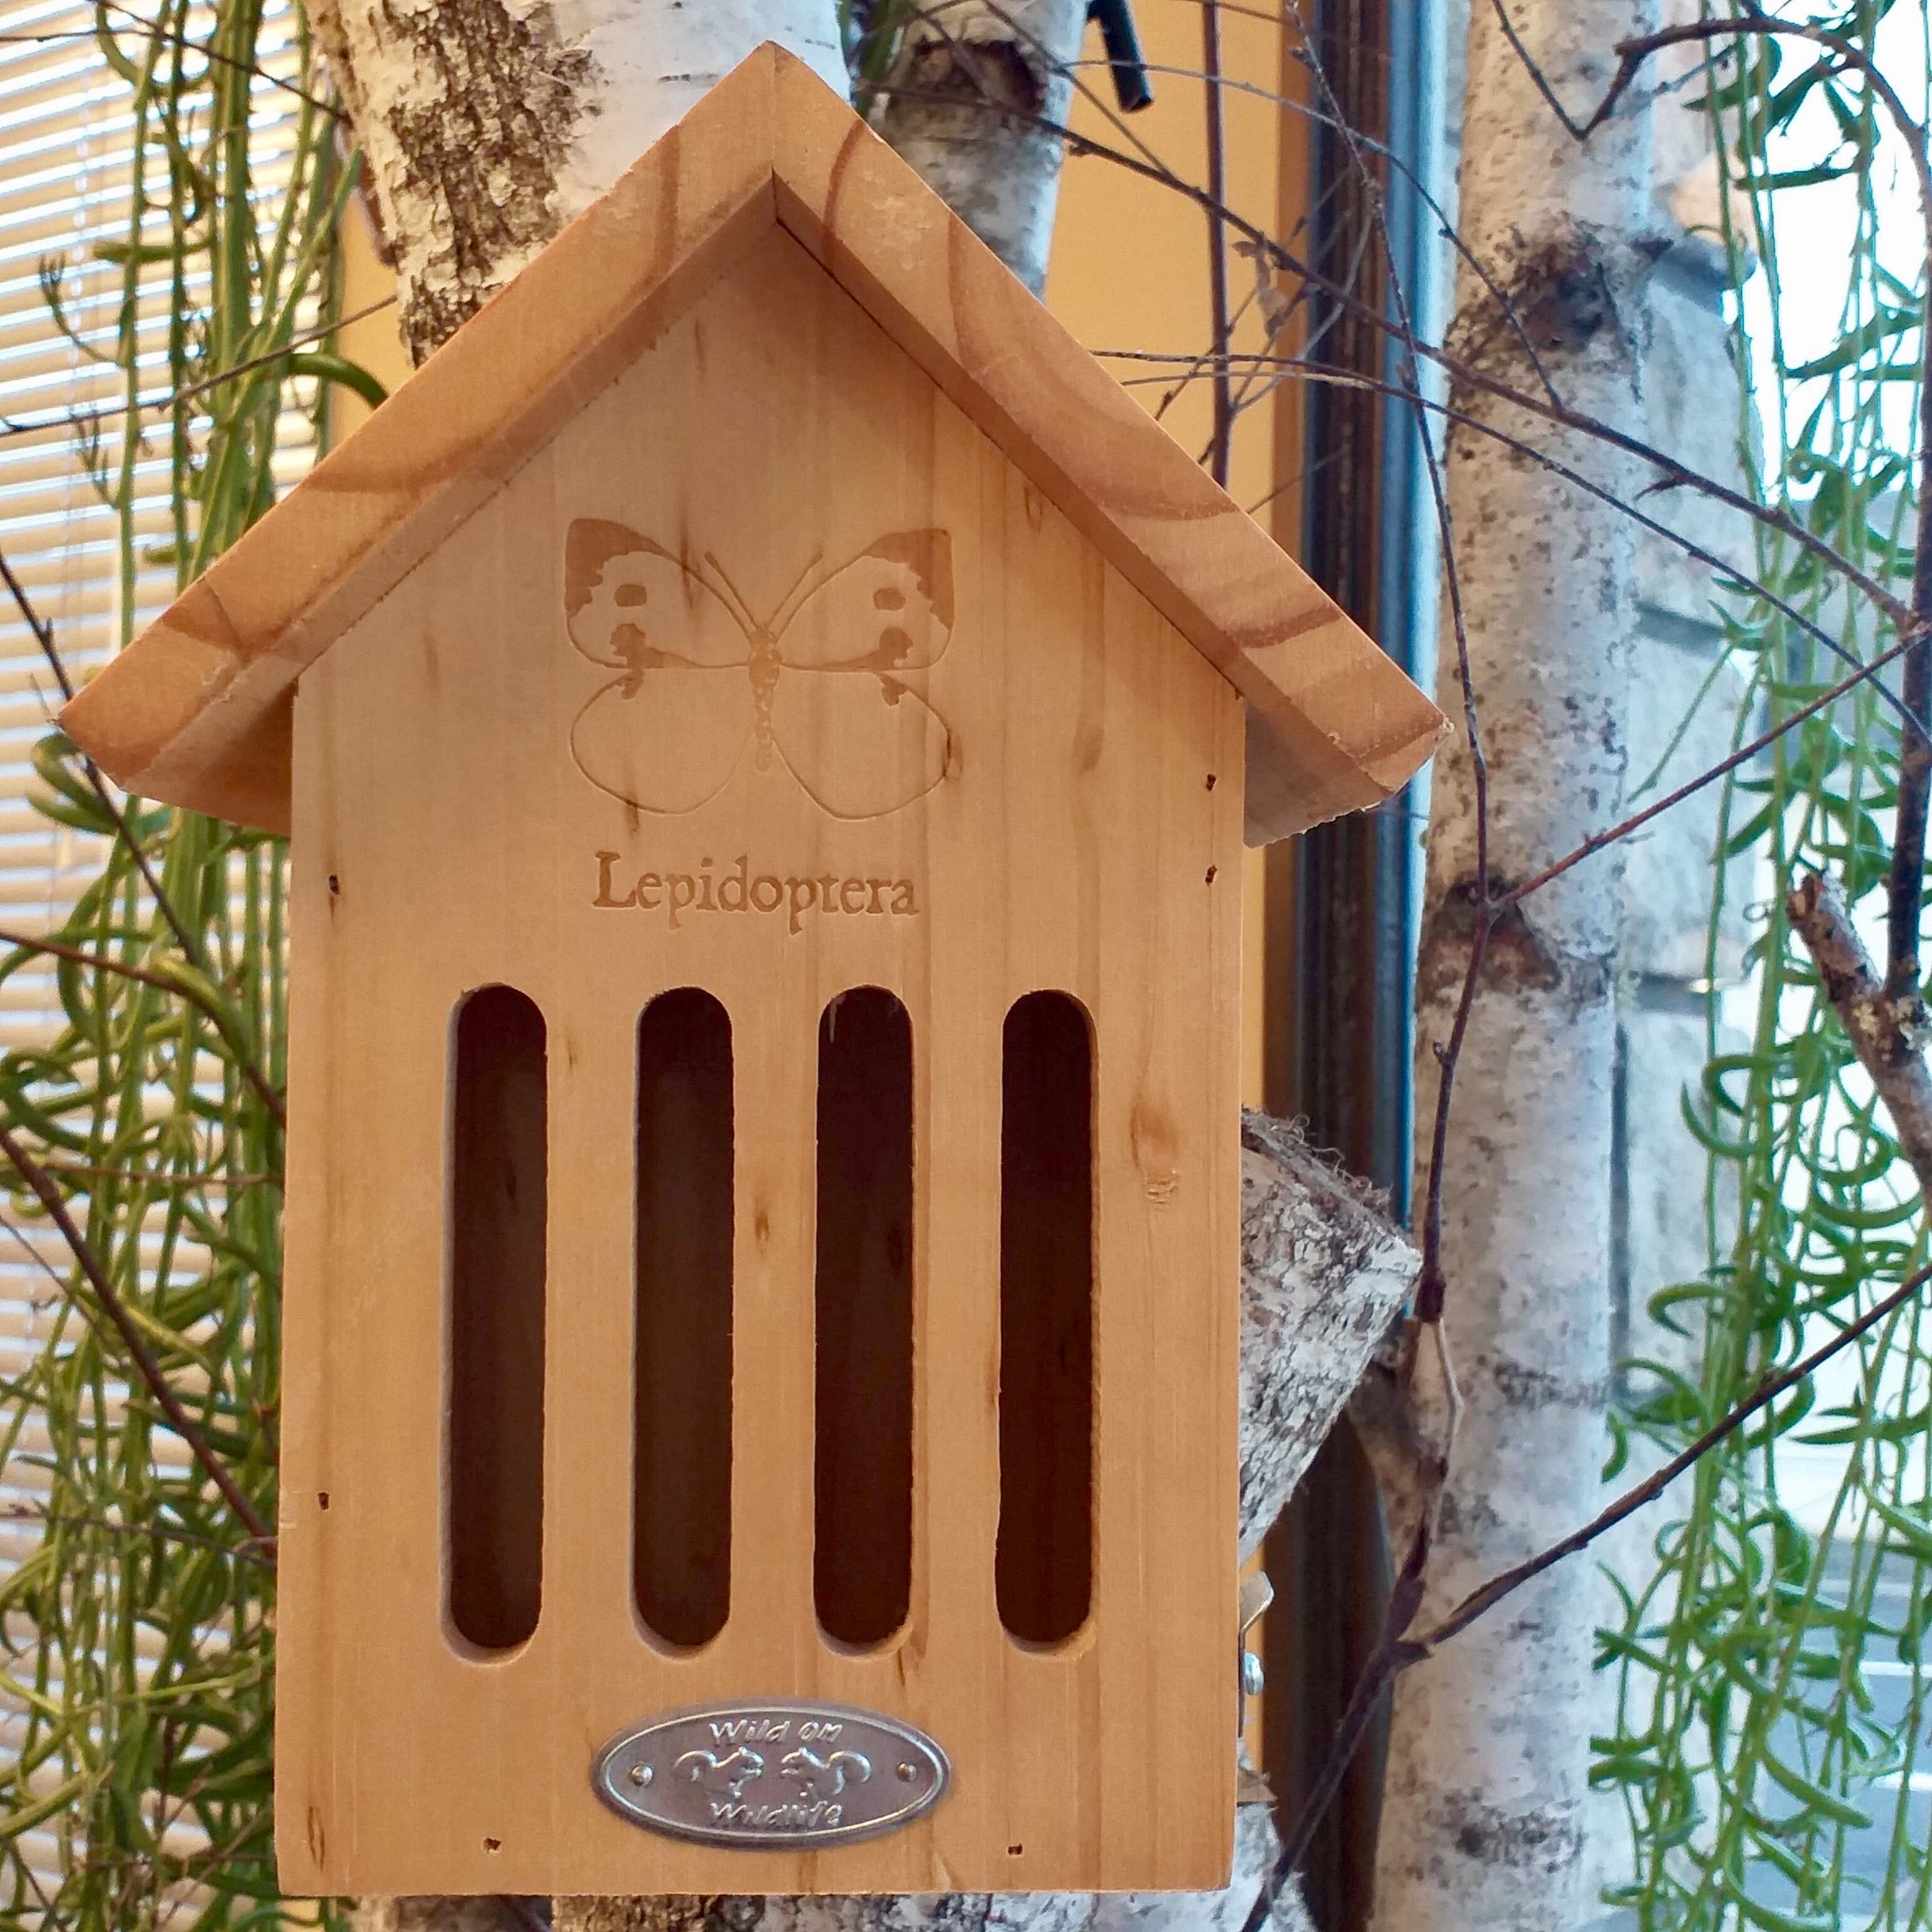 CHEZ UGO ET LEA nature et végétal eschert design hotel a insectes cabane oiseau 2